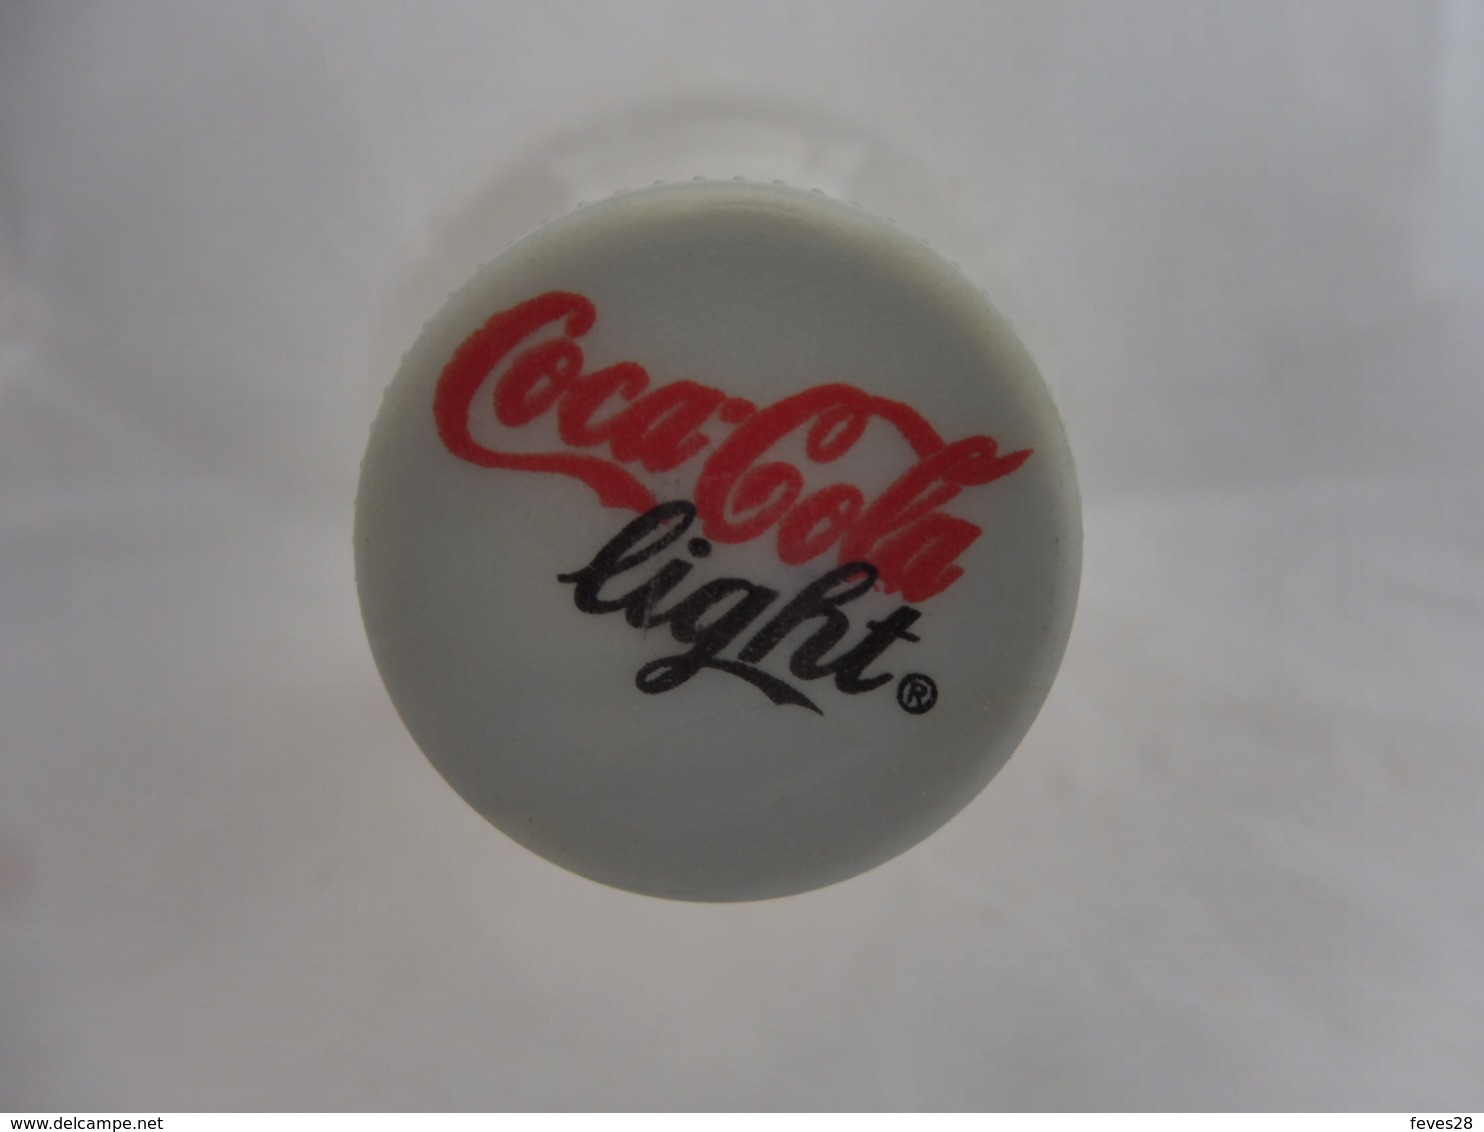 COCA COLA® LIGHT BOUTEILLE PLASTIQUE VIDE 2007 SUEDE 2L - Bottles